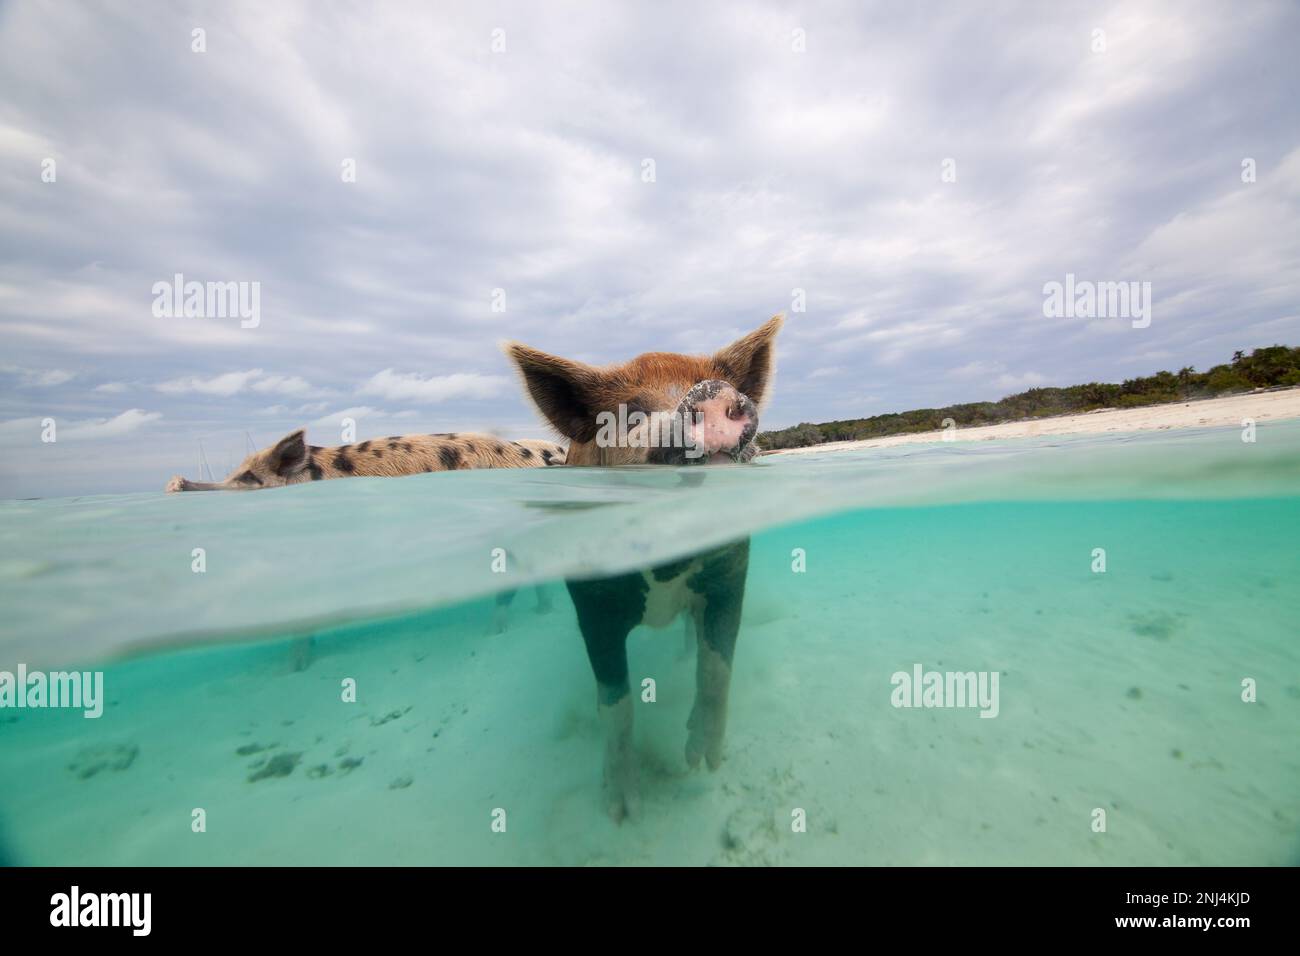 swimming pigs, Exuma, Bahamas Stock Photo